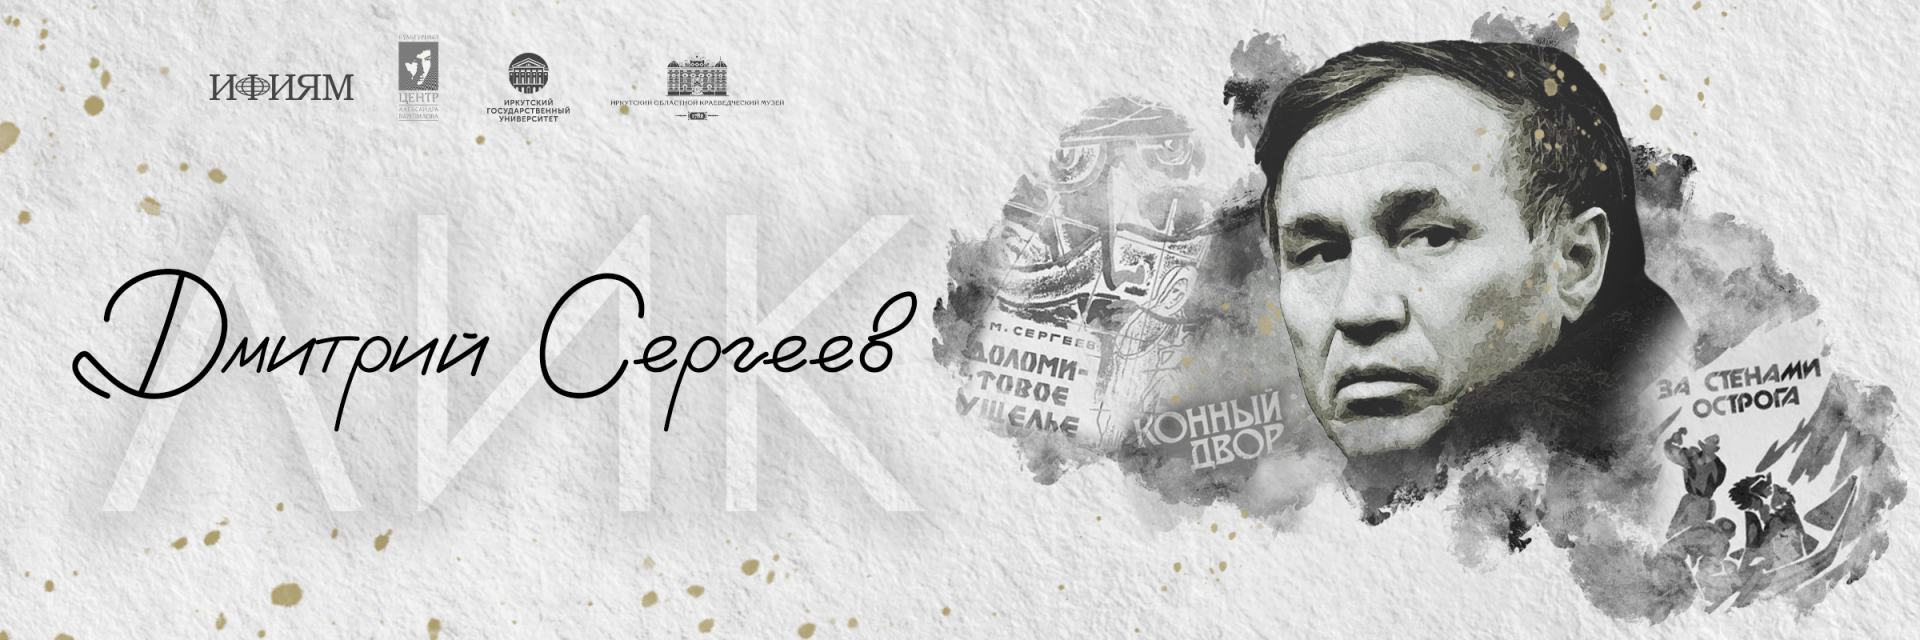 В январе откроется прием заявок на участие в конкурсе “ЛИК. Дмитрий Сергеев”